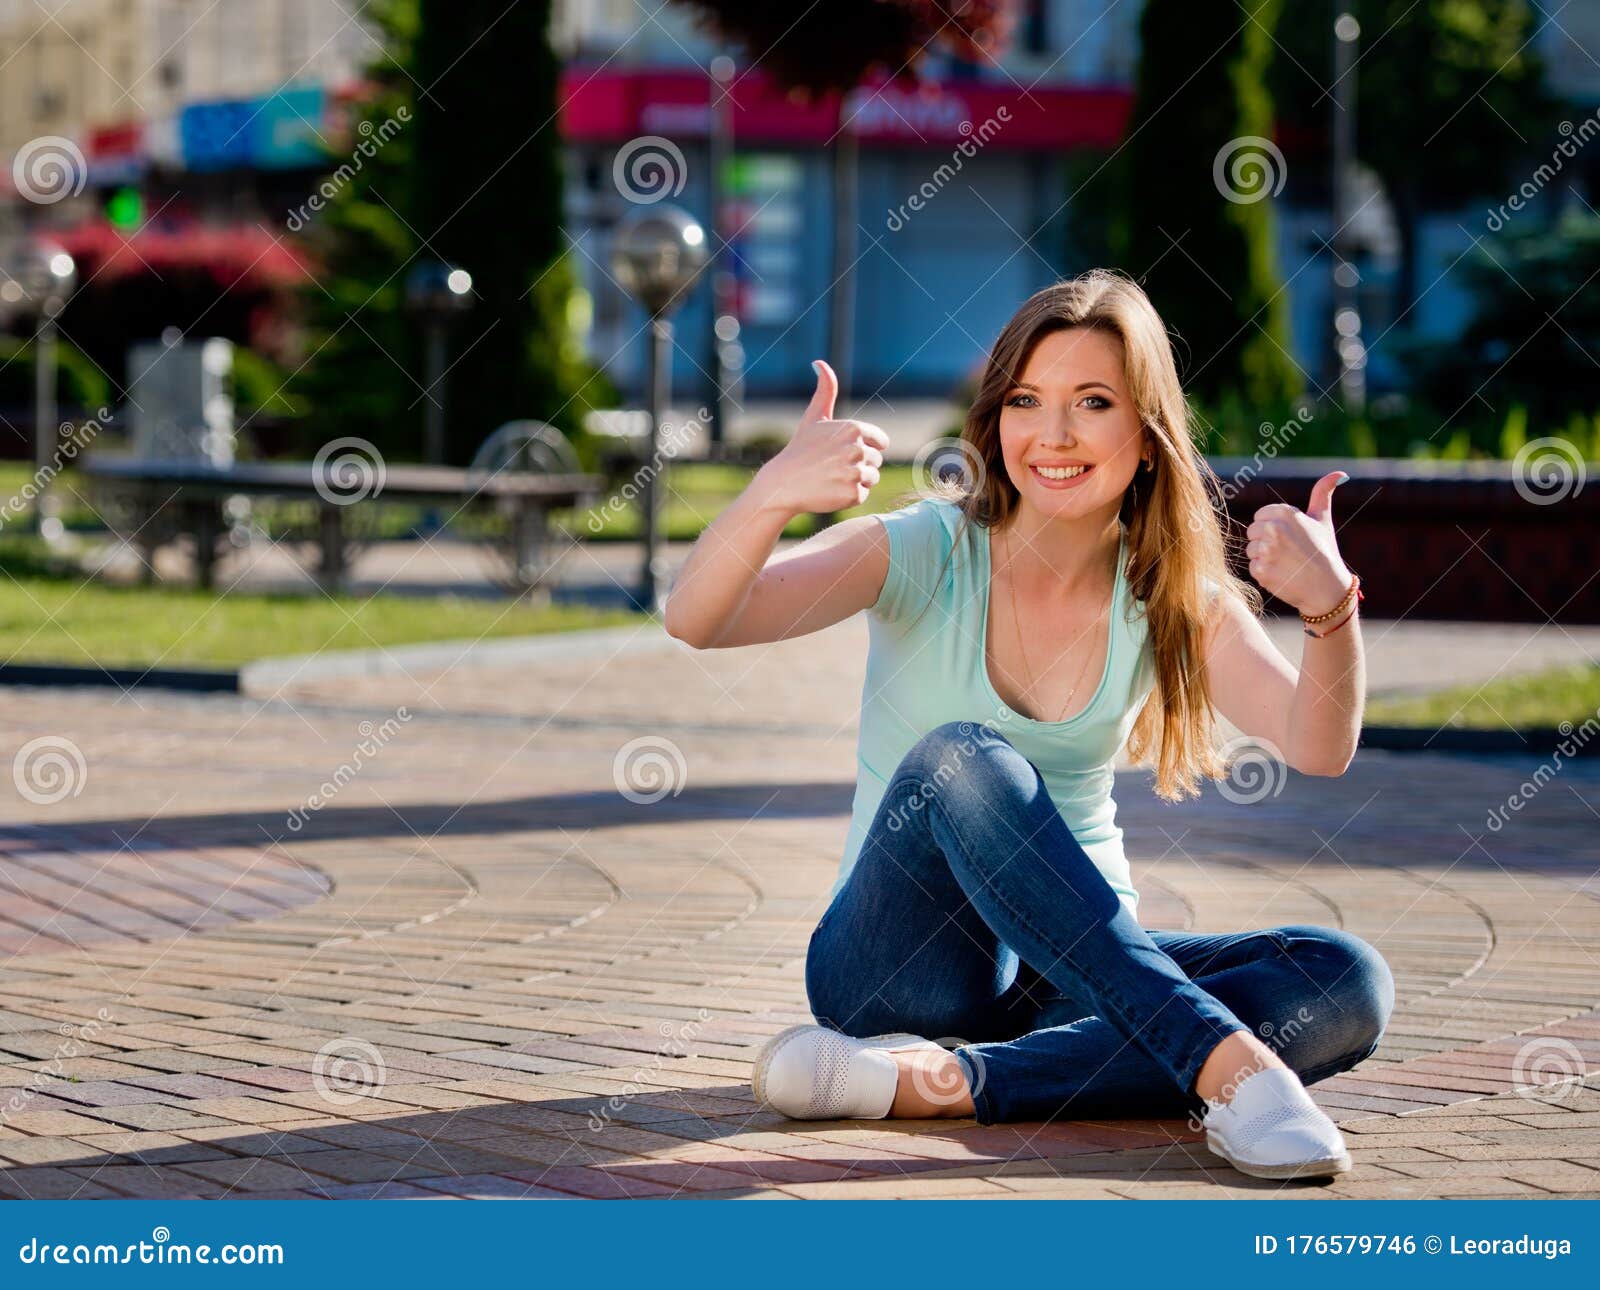 Молодые если приходят. Девушка на брусчатке фото. Девушка на тротуарной плитке. Фото где девушка сидит на тротуаре. Девочка показывает киску посреди улицы.